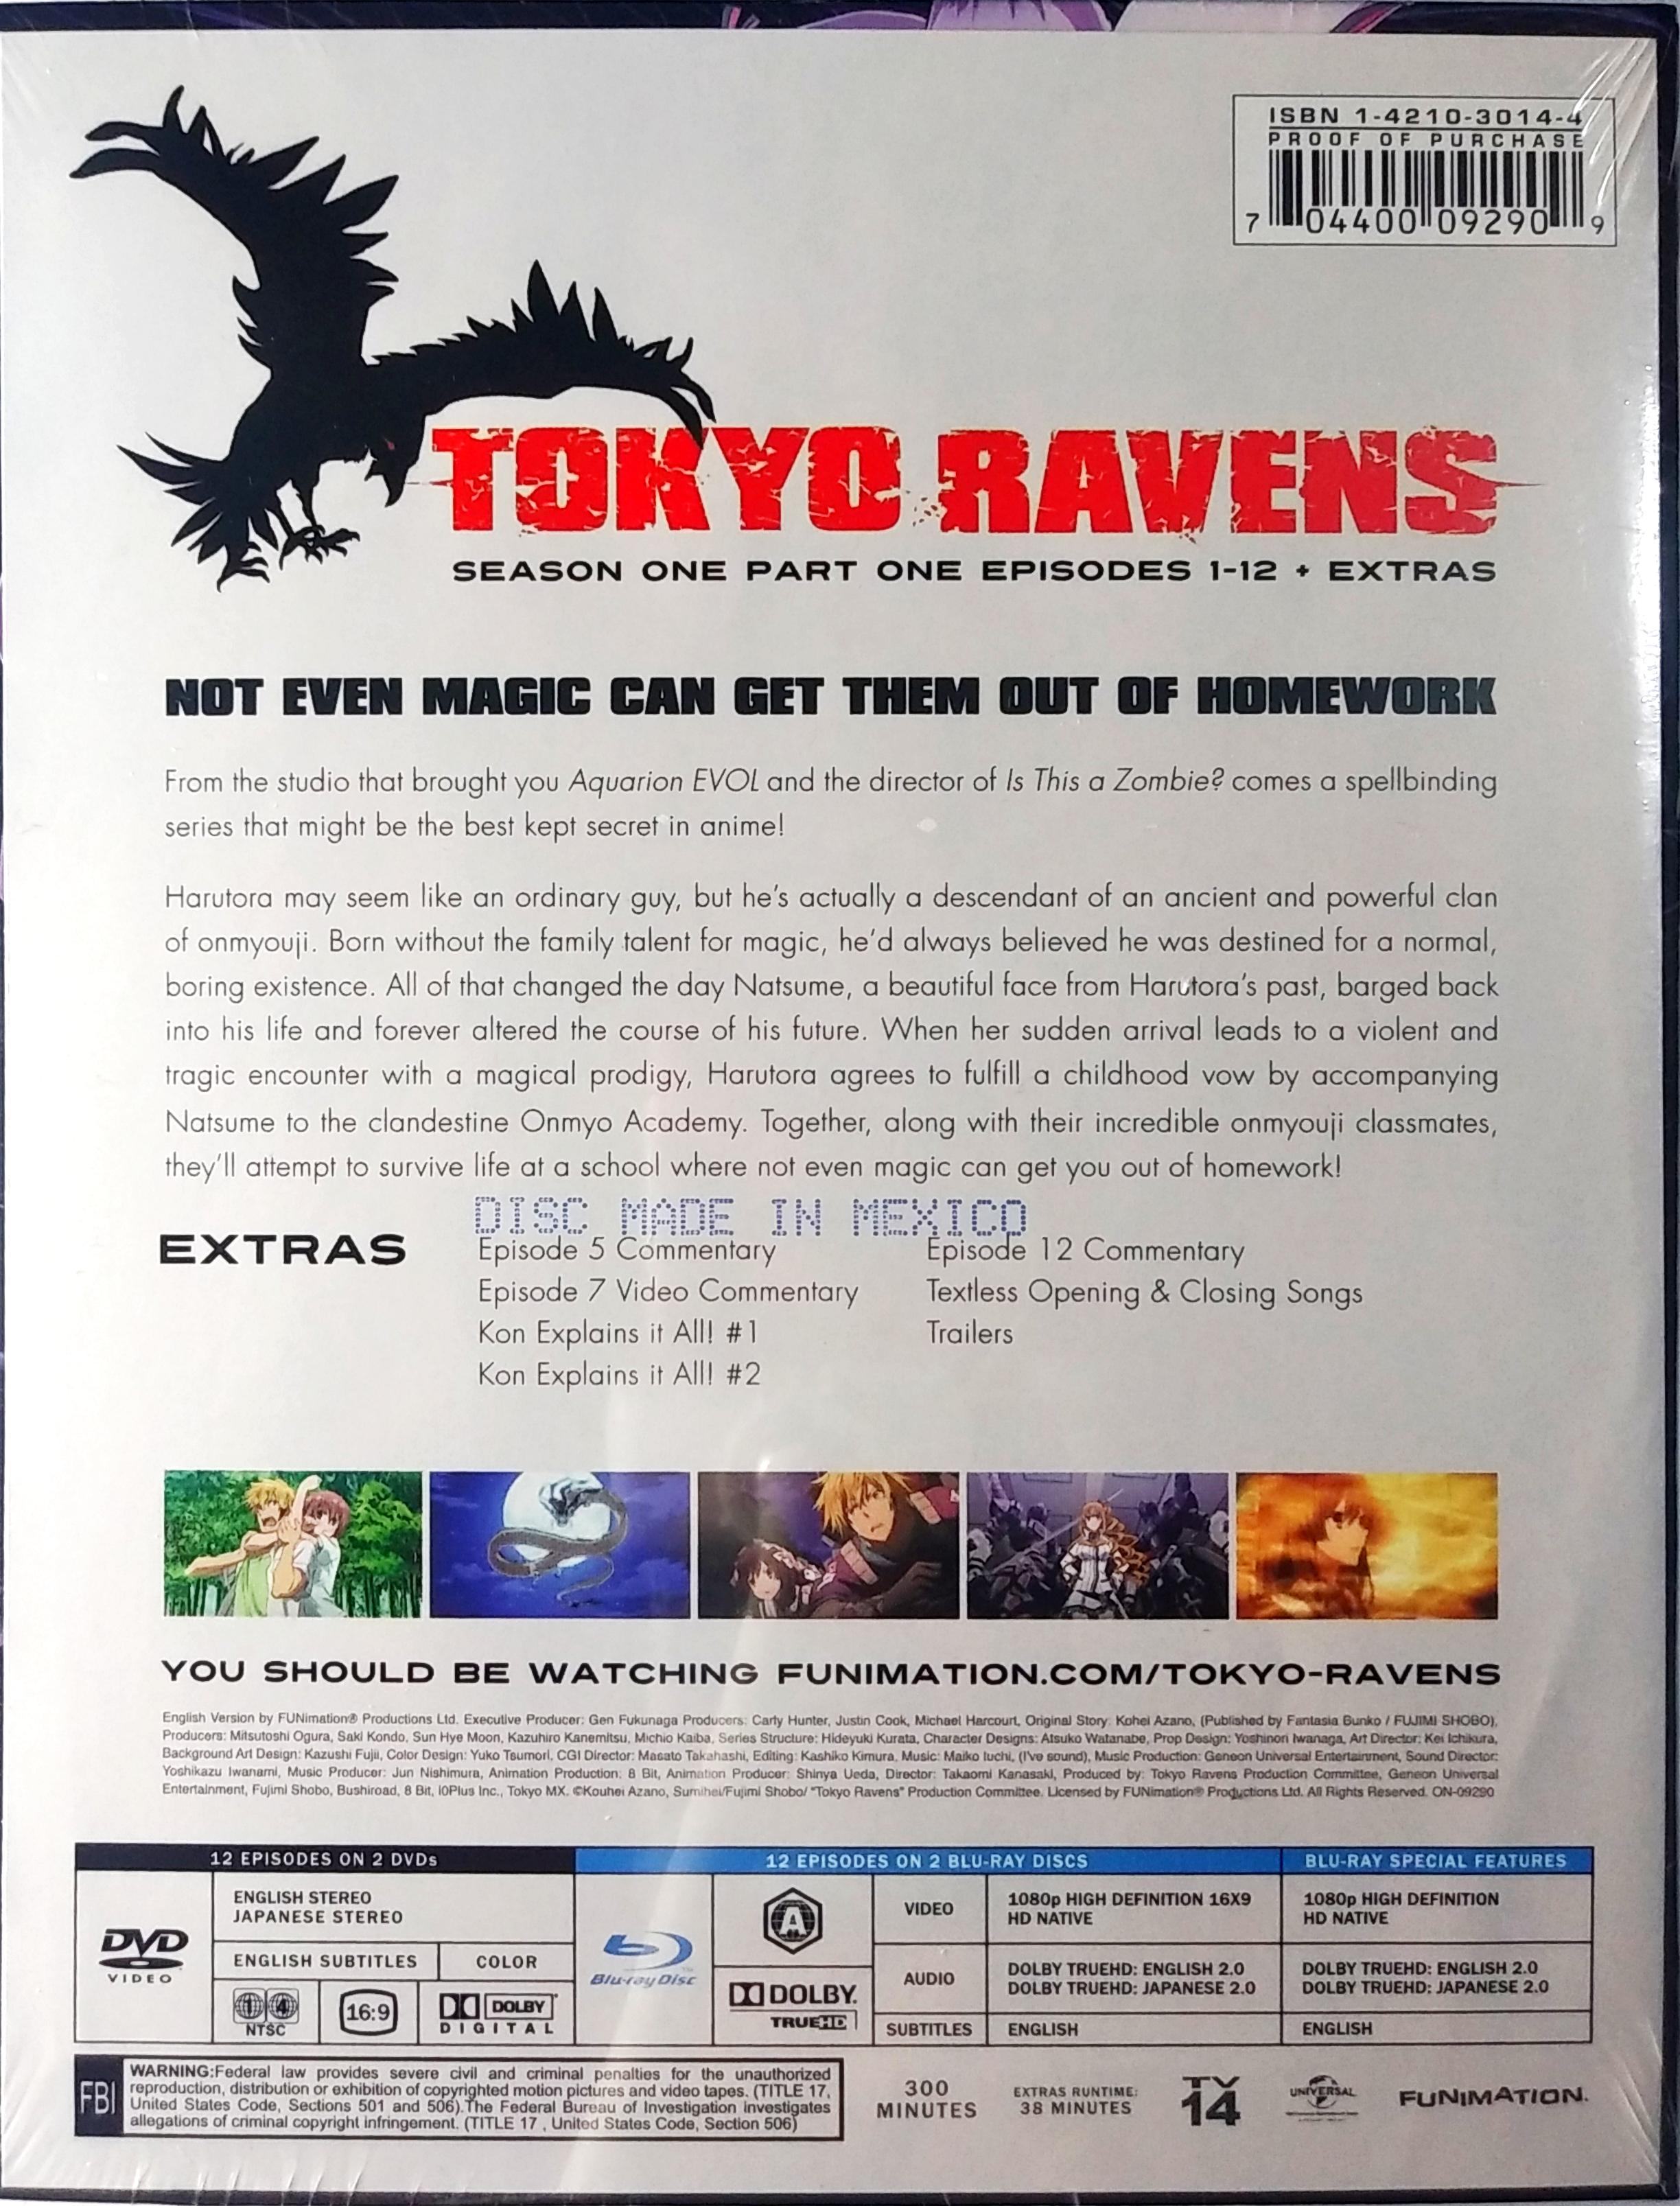 HD desktop wallpaper: Anime, Tokyo Ravens download free picture #636116